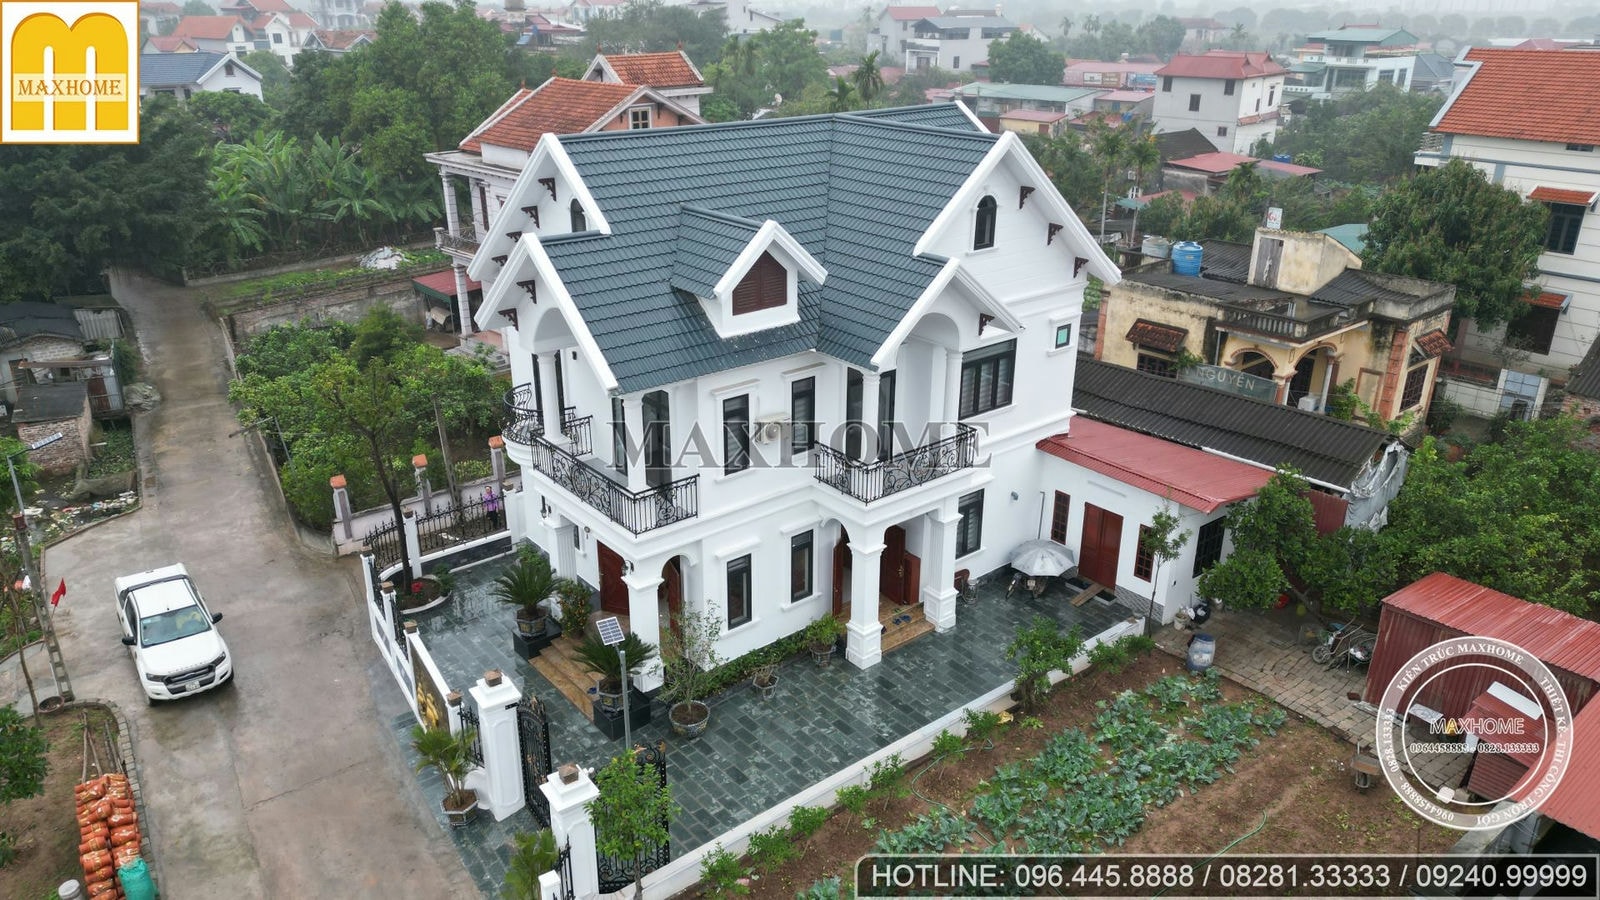 Xem thực tế nhà 2 tầng do Maxhome thi công tại Hưng Yên | MH01125